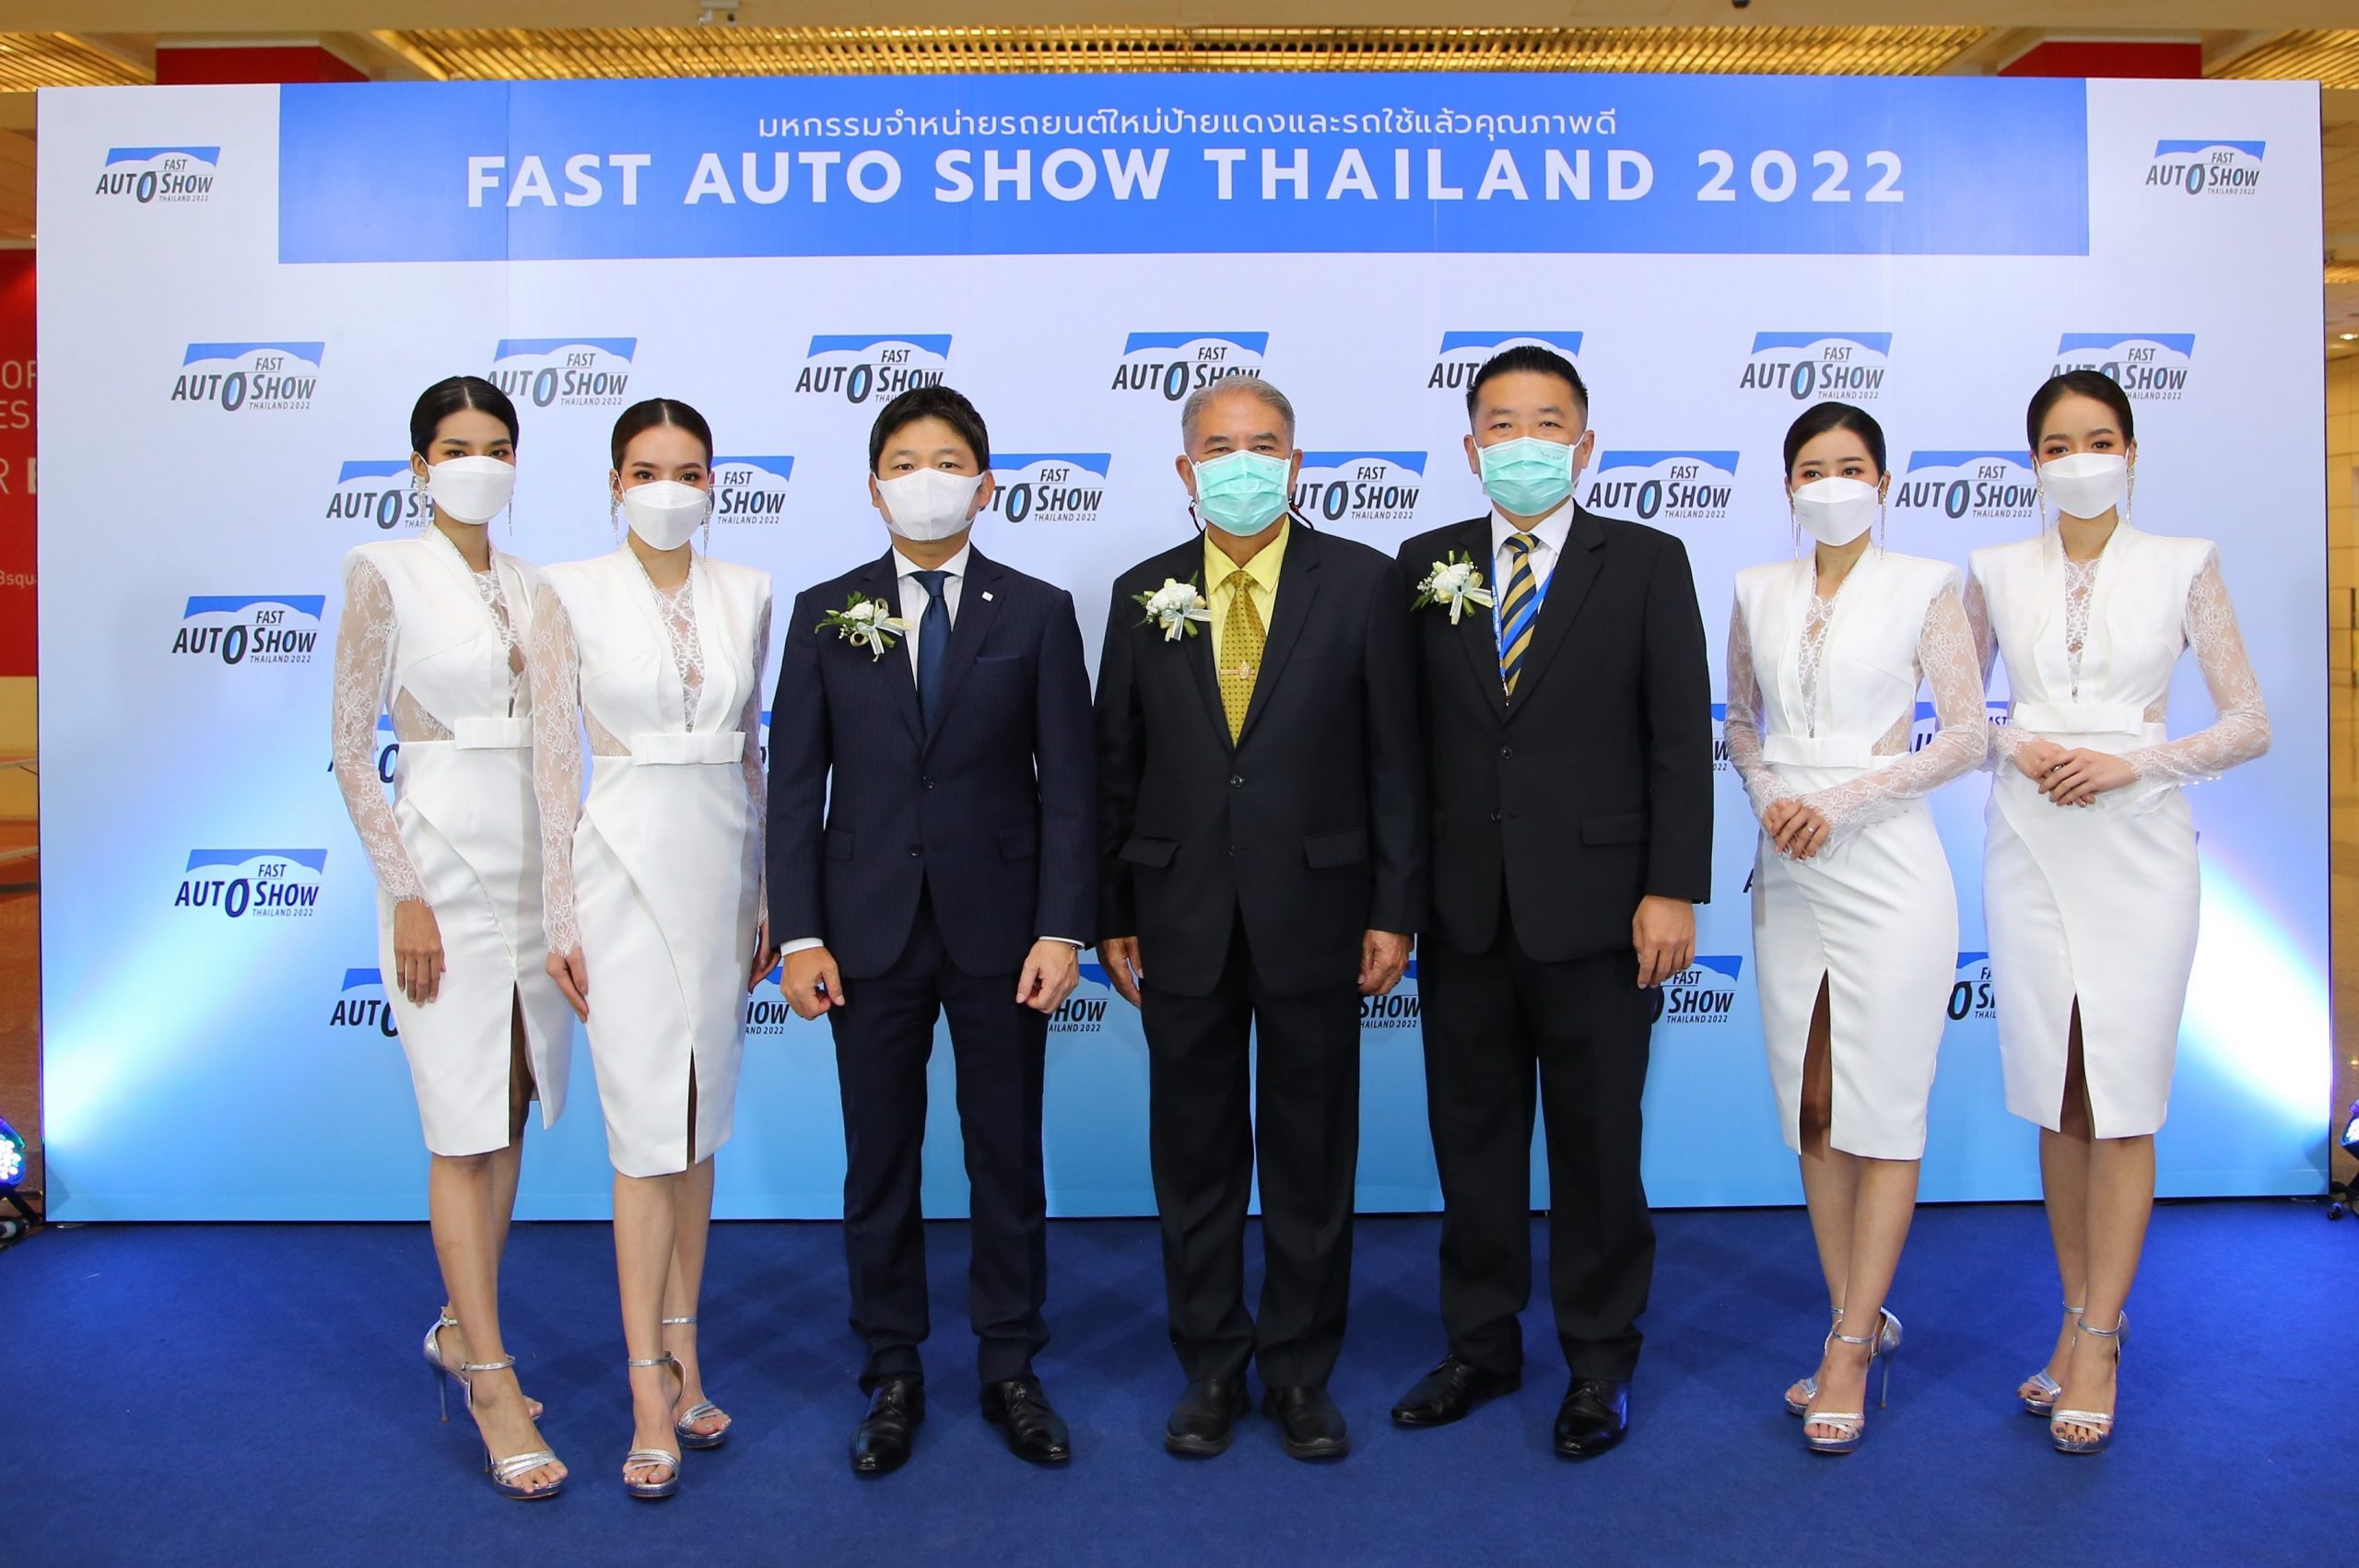 บริดจสโตนร่วมขับเคลื่อนตลาดยานยนต์ไทย ตอกย้ำภาพลักษณ์ยางชั้นนำระดับโลก ในงาน Fast Auto Show Thailand 2022